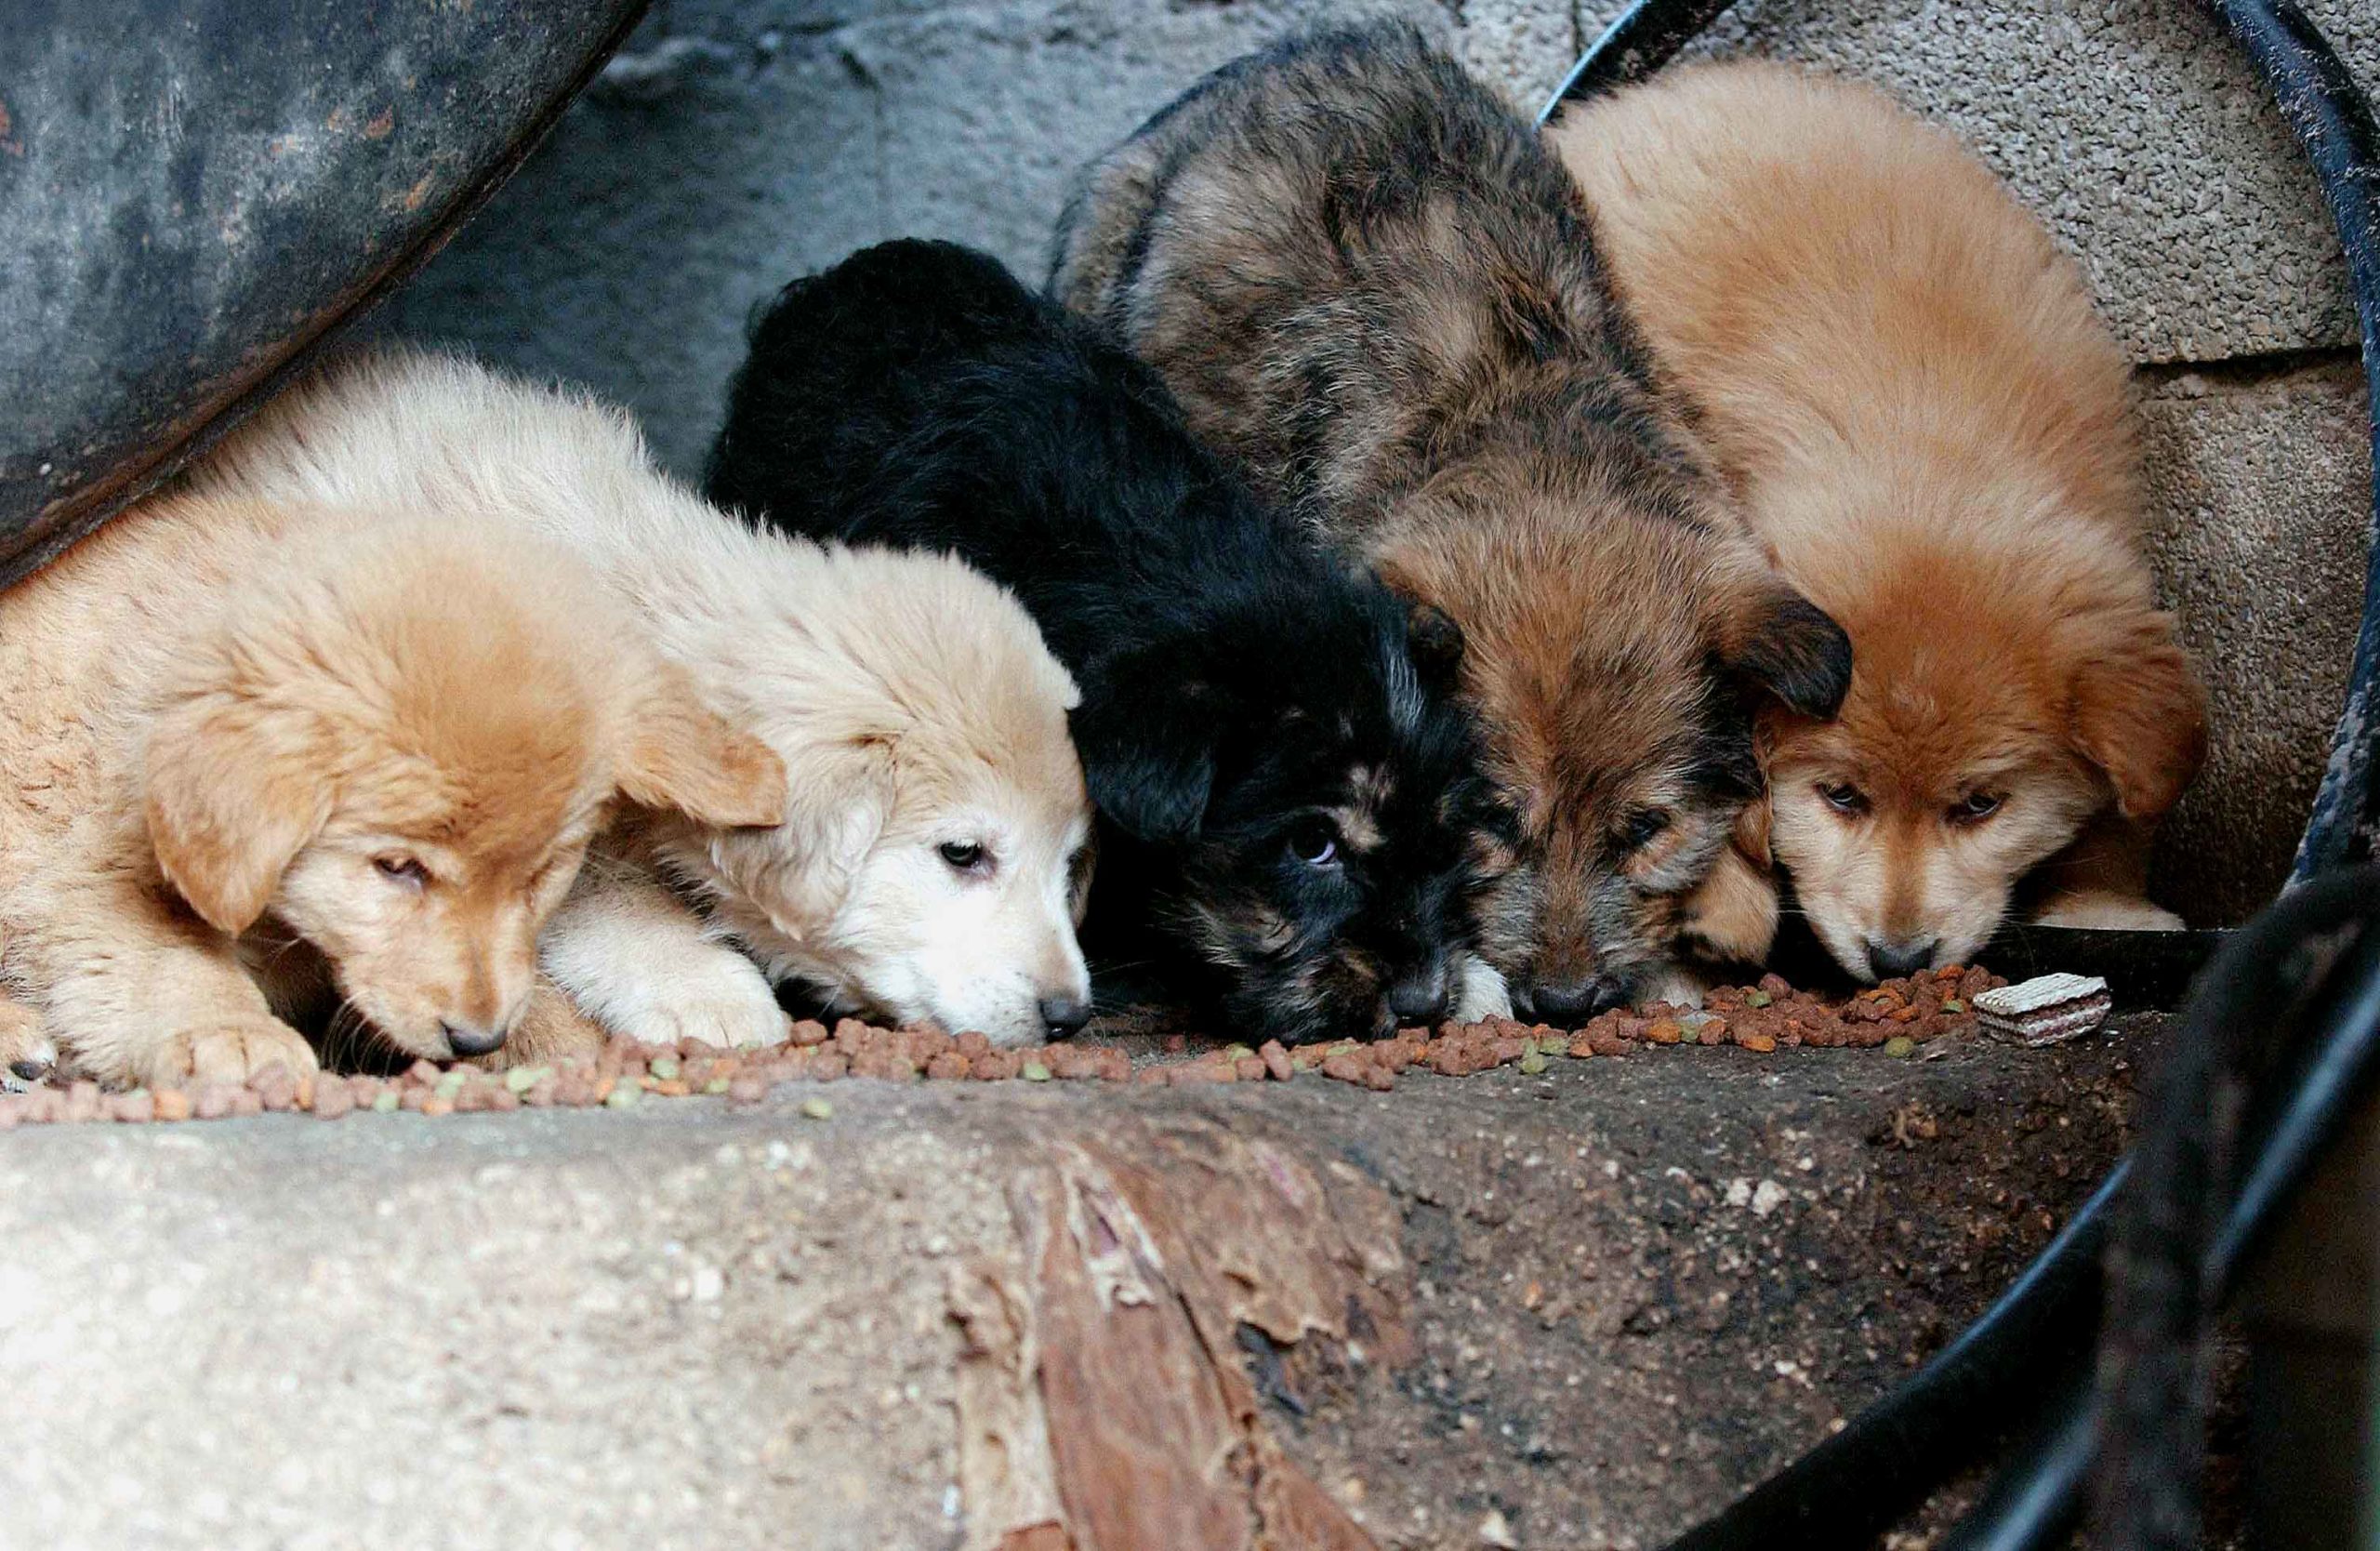 Ροδόπη- Α. Δημοτζίκης: Αντιμέτωποι με αγέλες αδέσποτων σκύλων κάτοικοι της Αμβροσίας και του Παλλαδίου